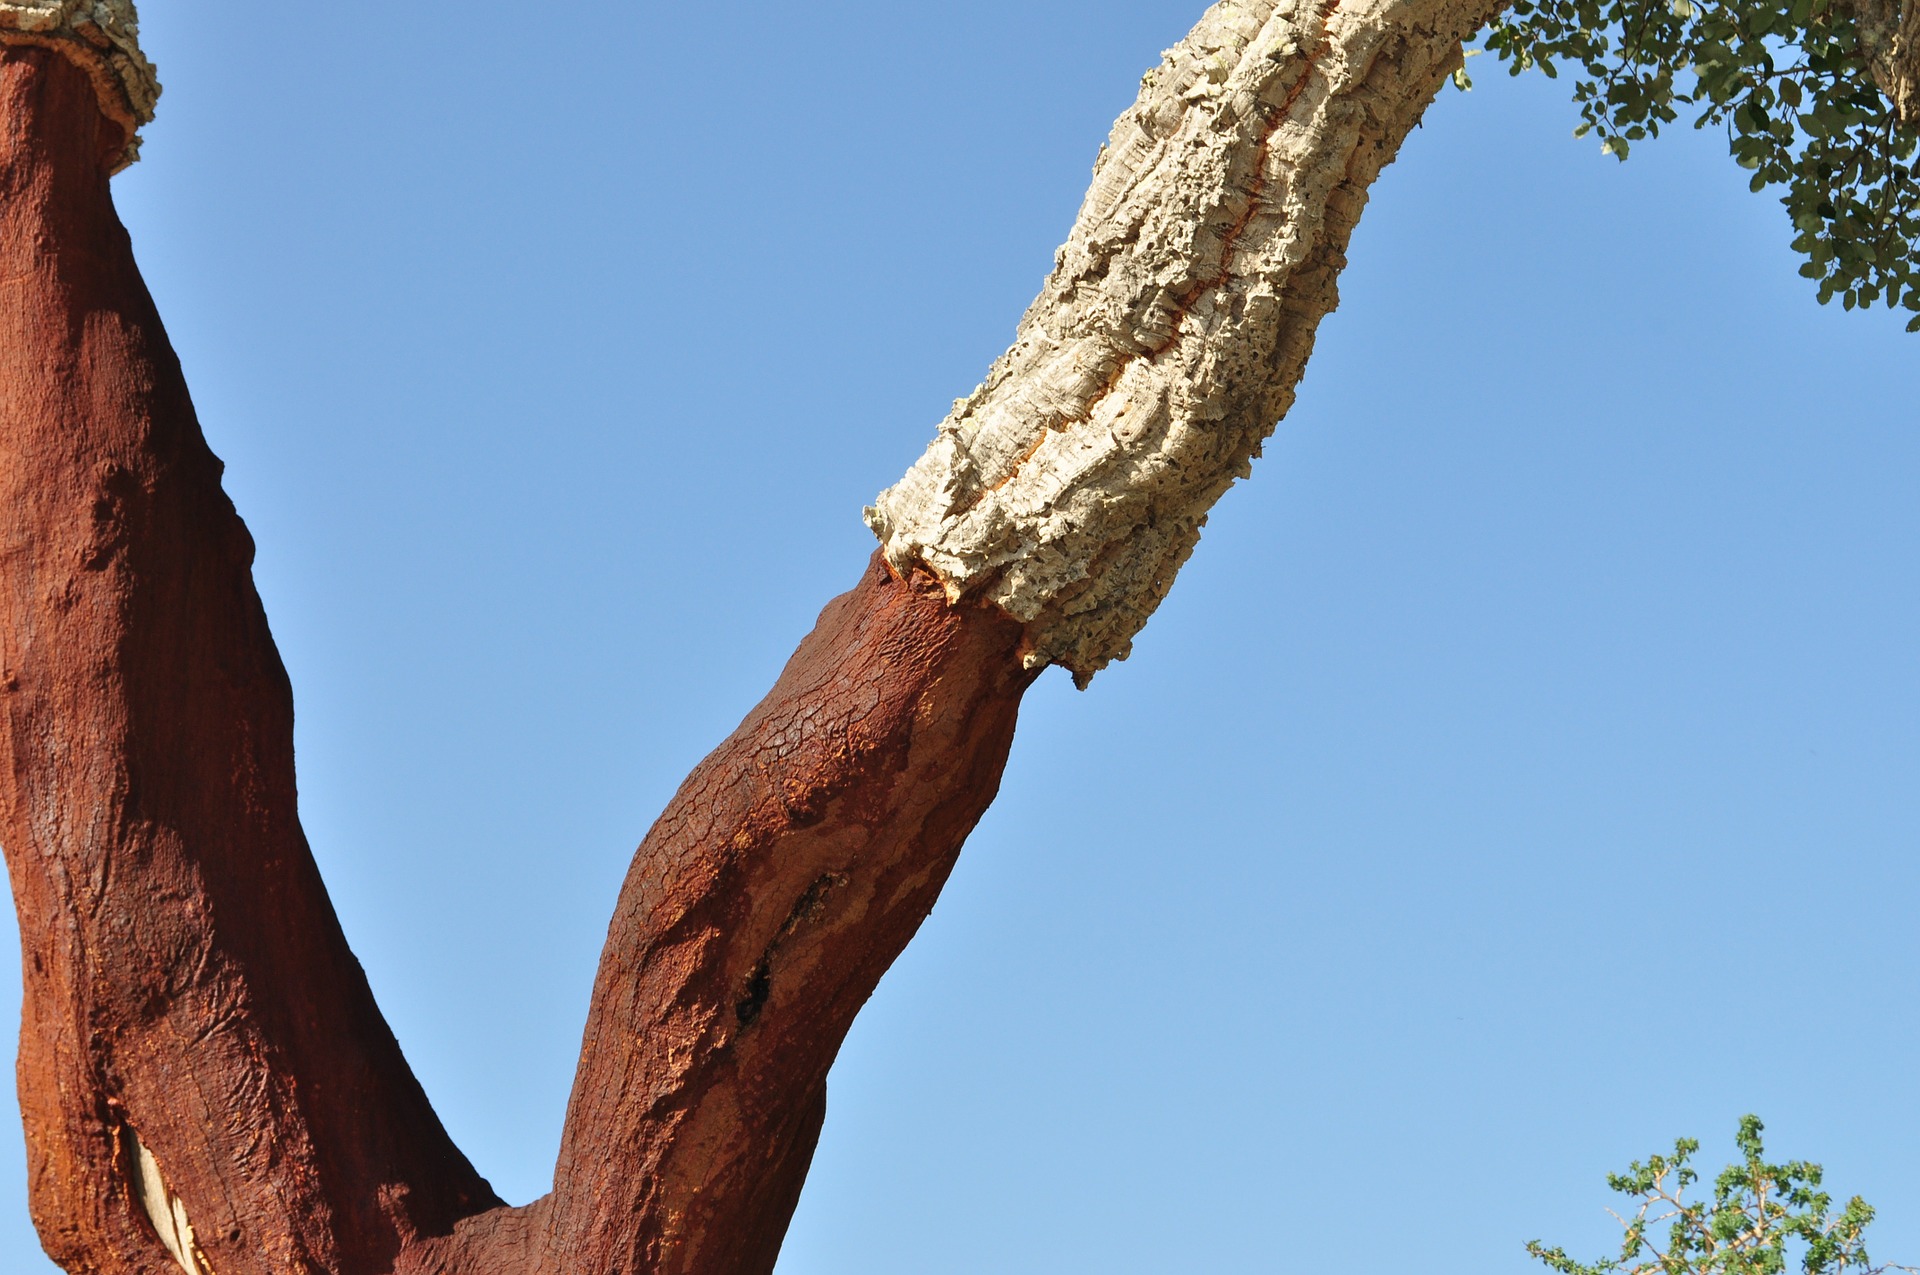 Cork oak bark.